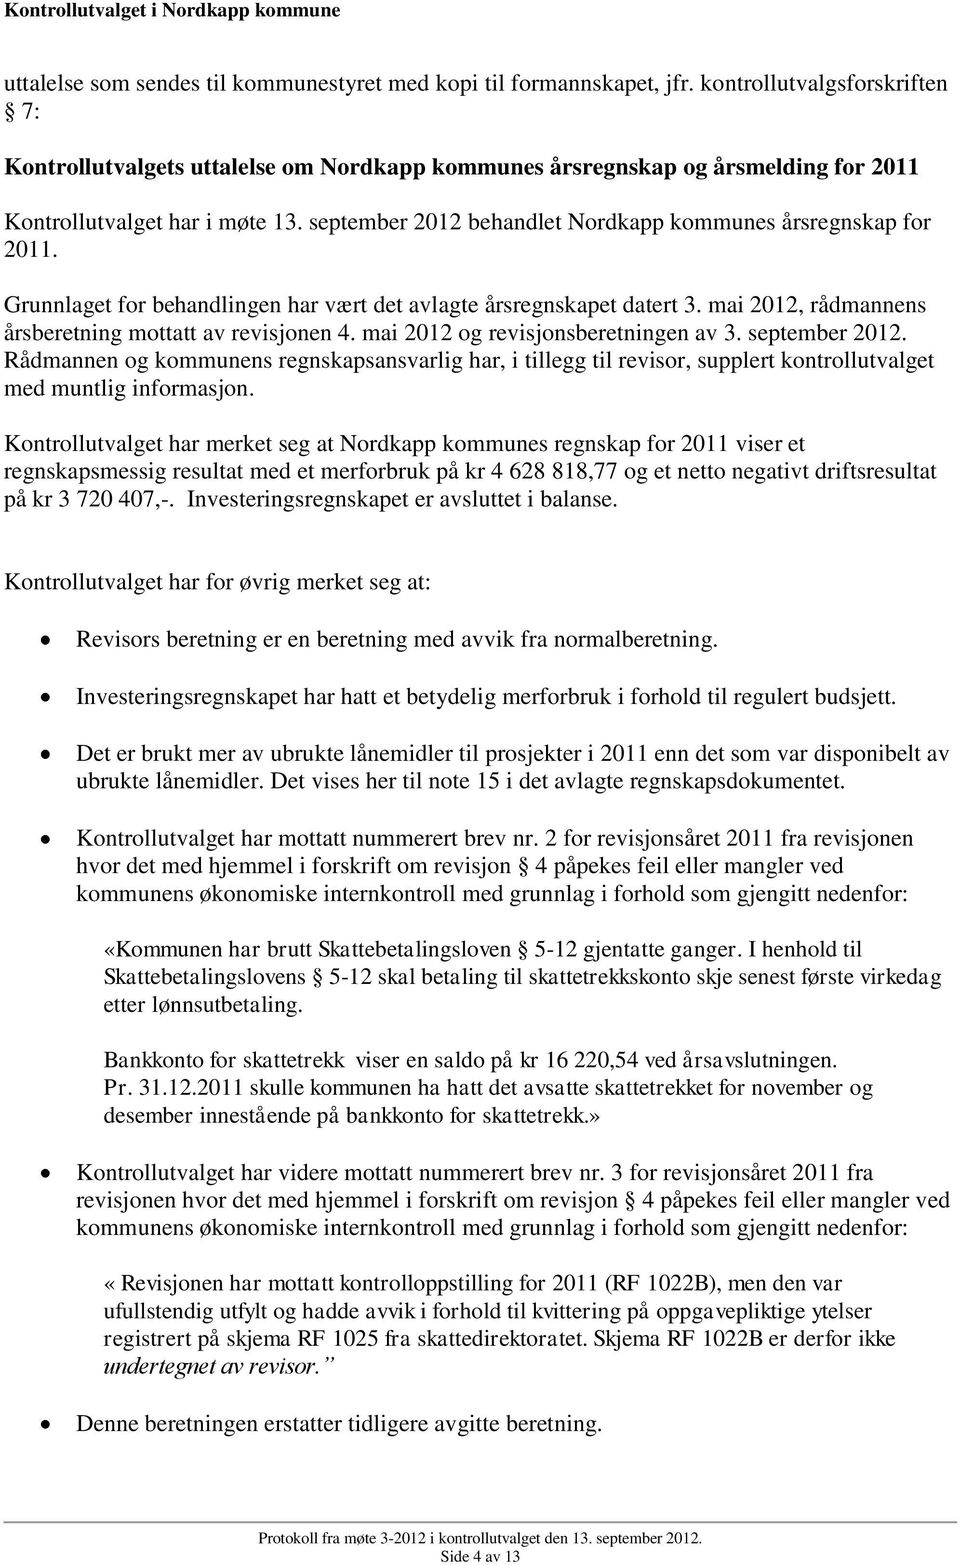 september 2012 behandlet Nordkapp kommunes årsregnskap for 2011. Grunnlaget for behandlingen har vært det avlagte årsregnskapet datert 3. mai 2012, rådmannens årsberetning mottatt av revisjonen 4.